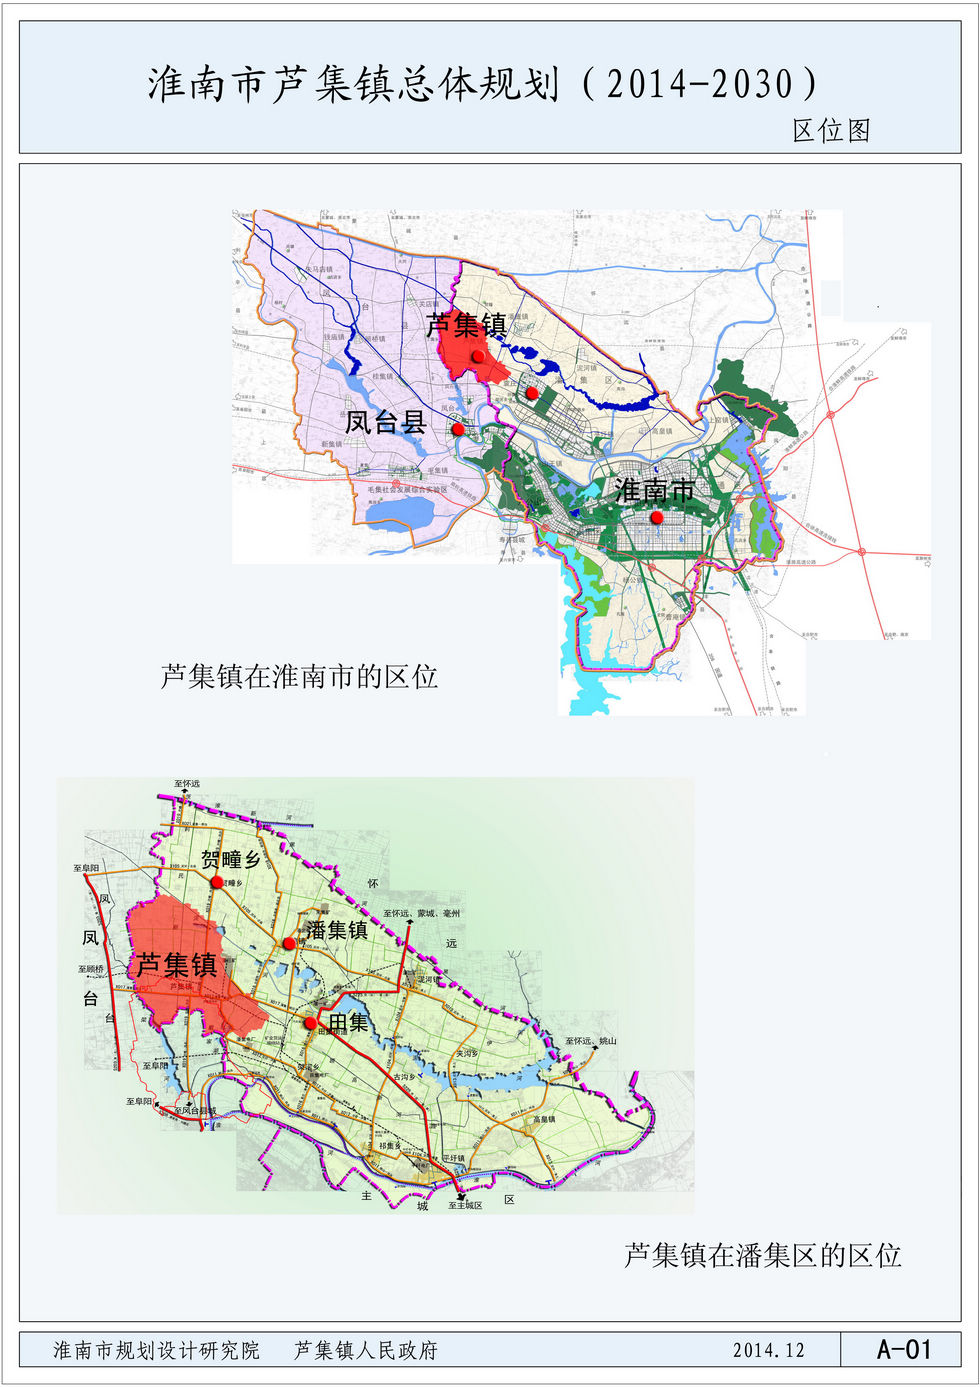 《淮南市芦集镇总体规划(2014